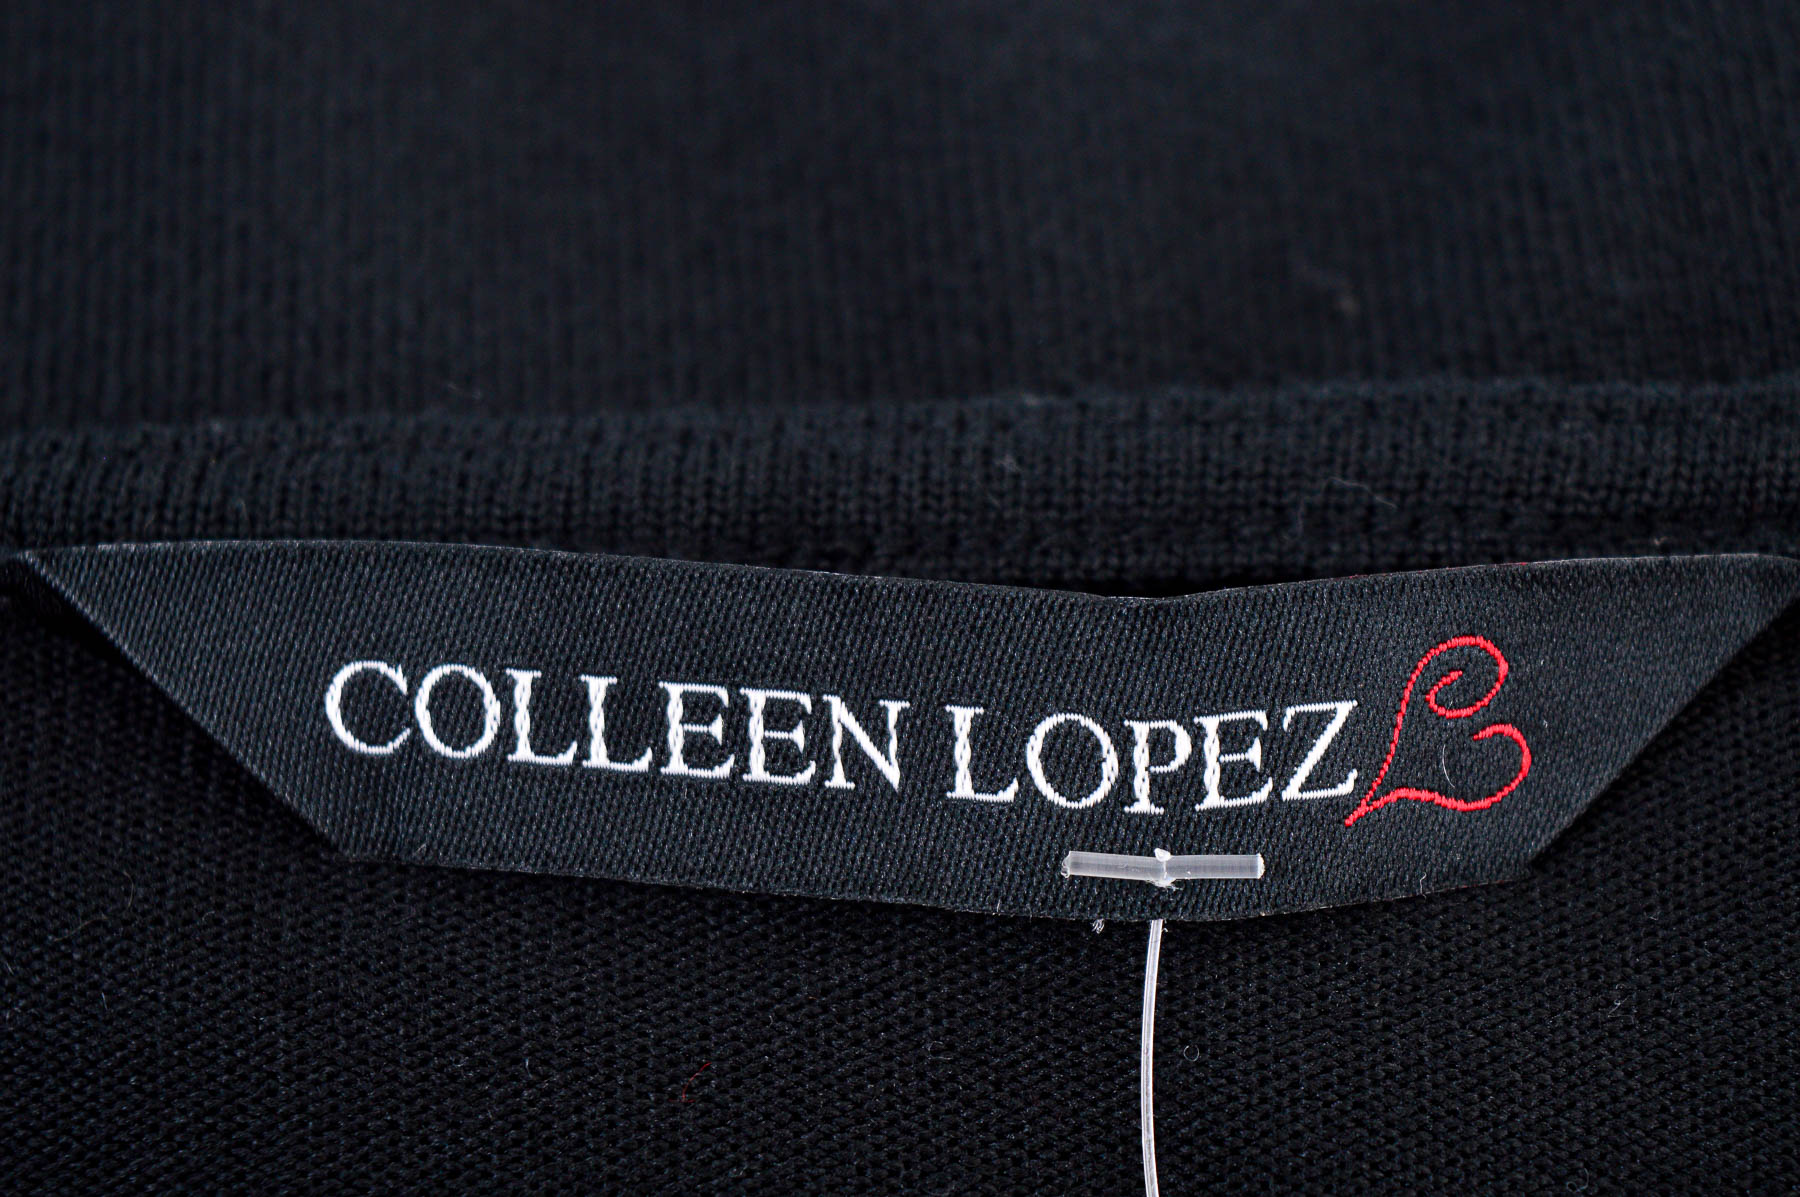 Дамска жилетка - Colleen Lopez - 2